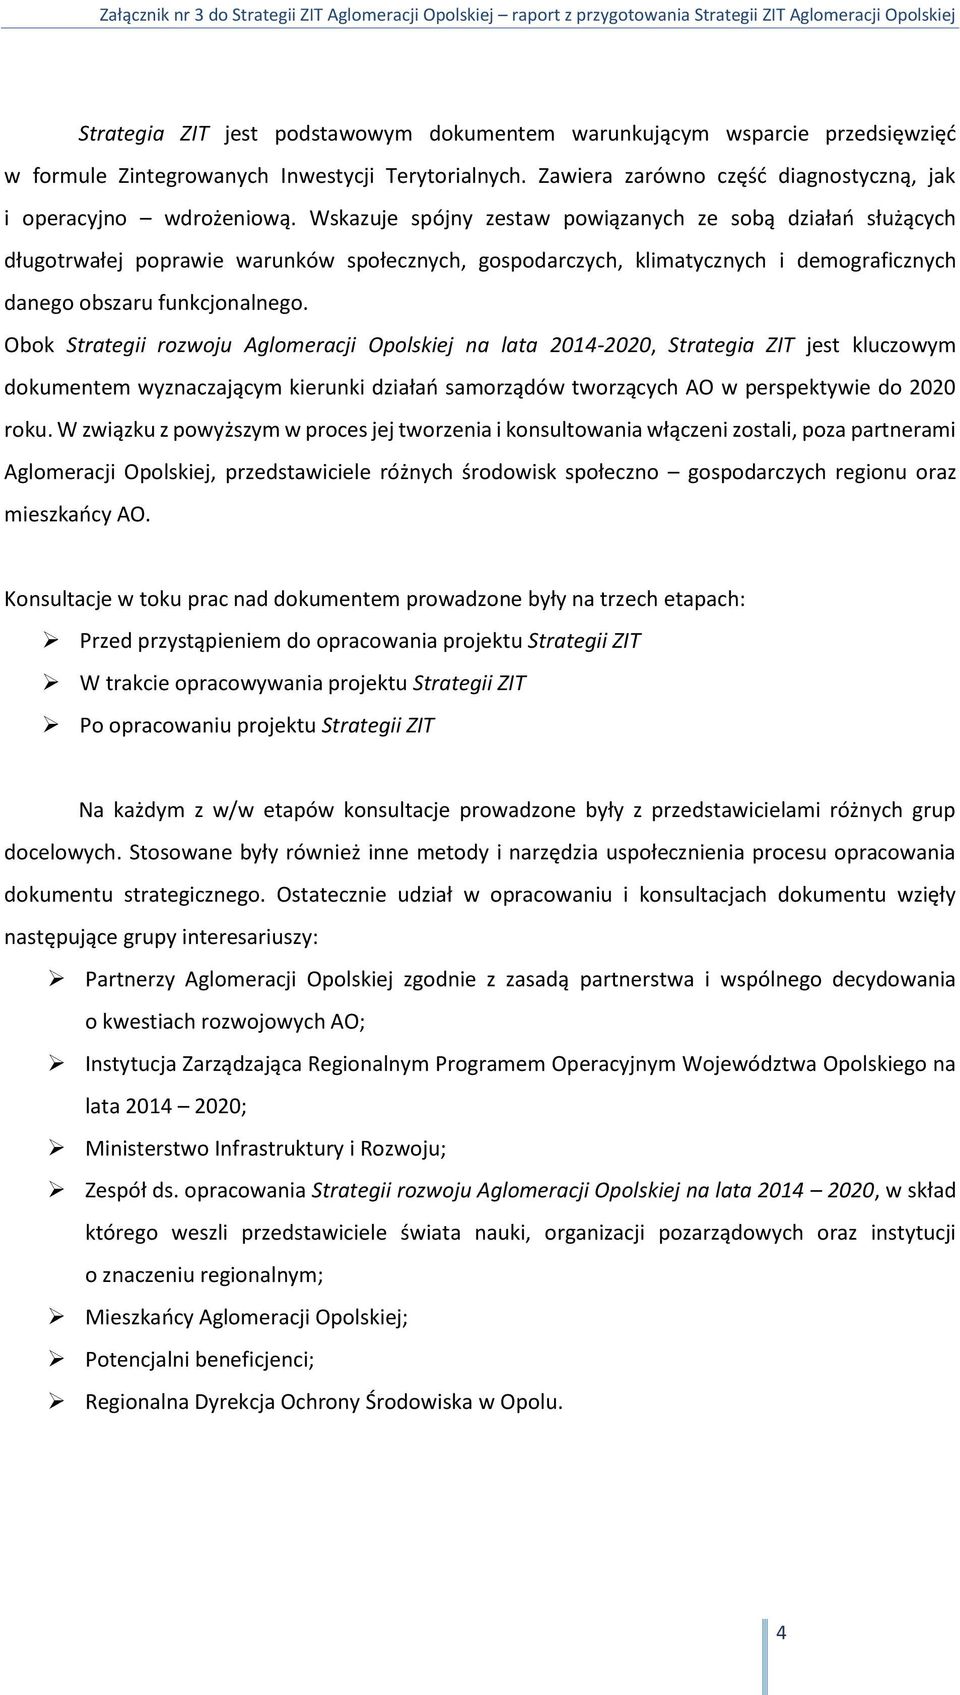 Obok Strategii rozwoju Aglomeracji Opolskiej na lata 2014-2020, Strategia ZIT jest kluczowym dokumentem wyznaczającym kierunki działań samorządów tworzących AO w perspektywie do 2020 roku.